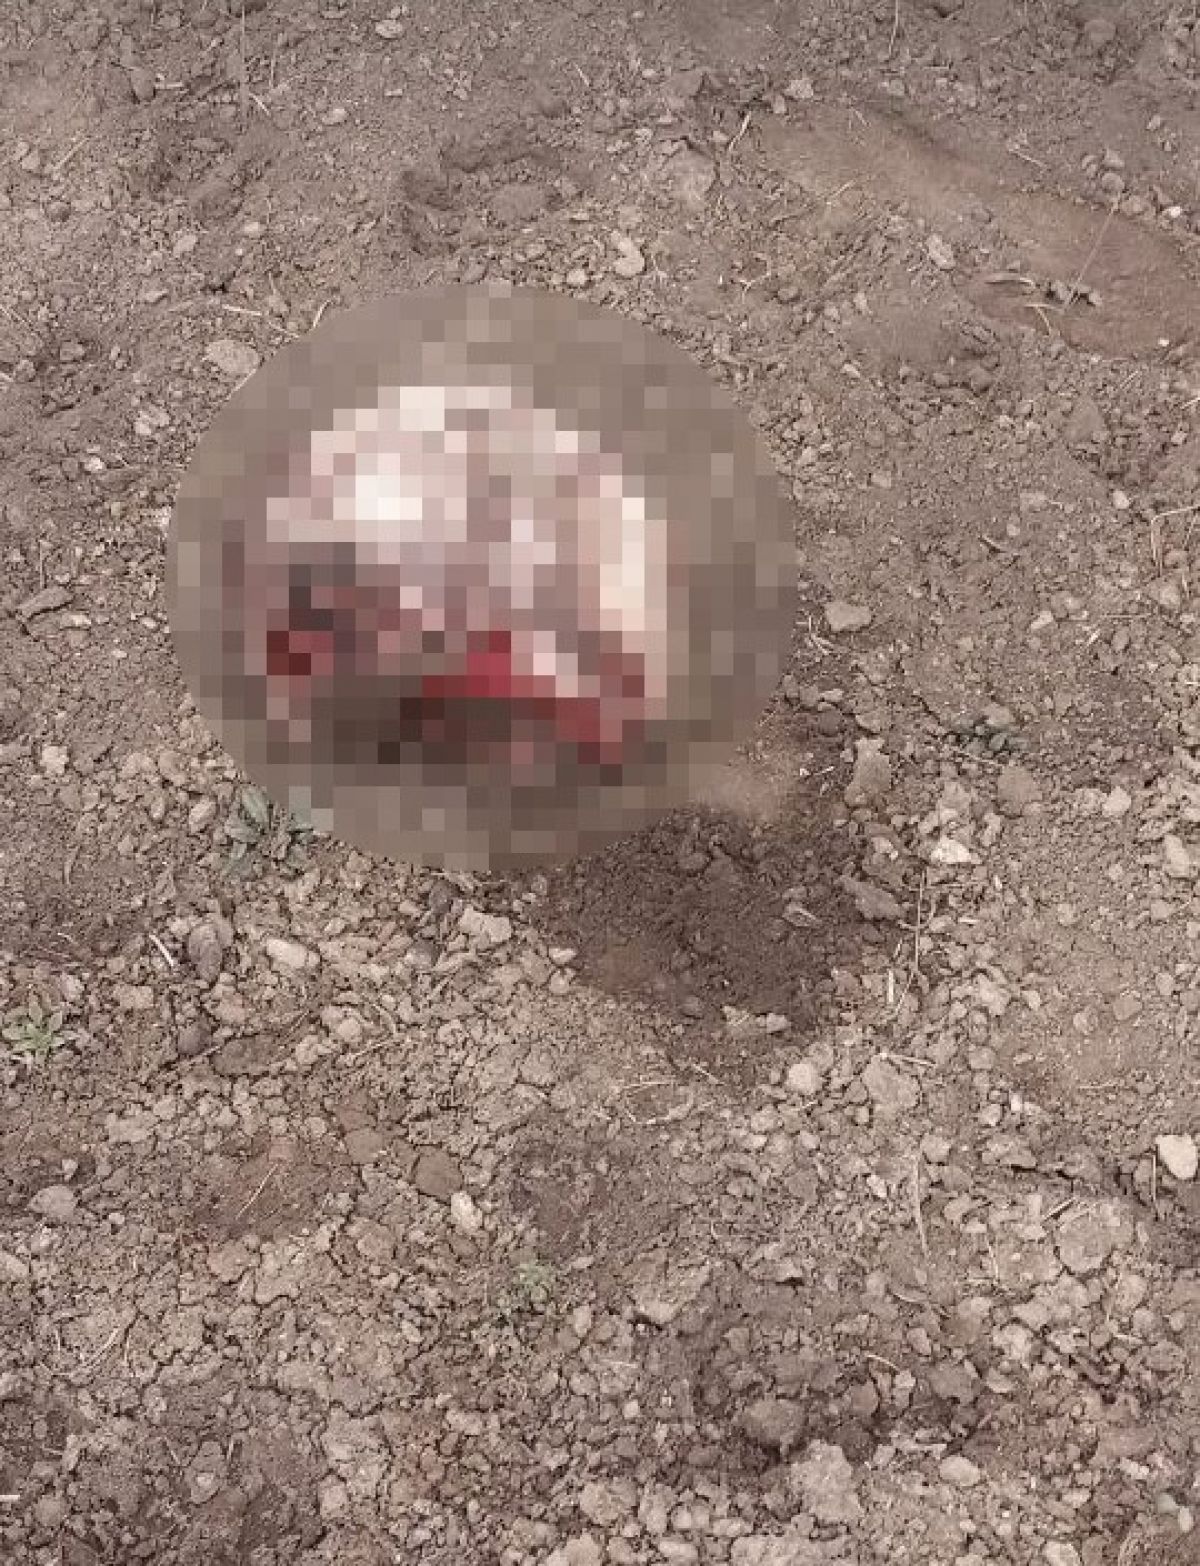 İran sınırında parçalanmış ceset bulundu #1